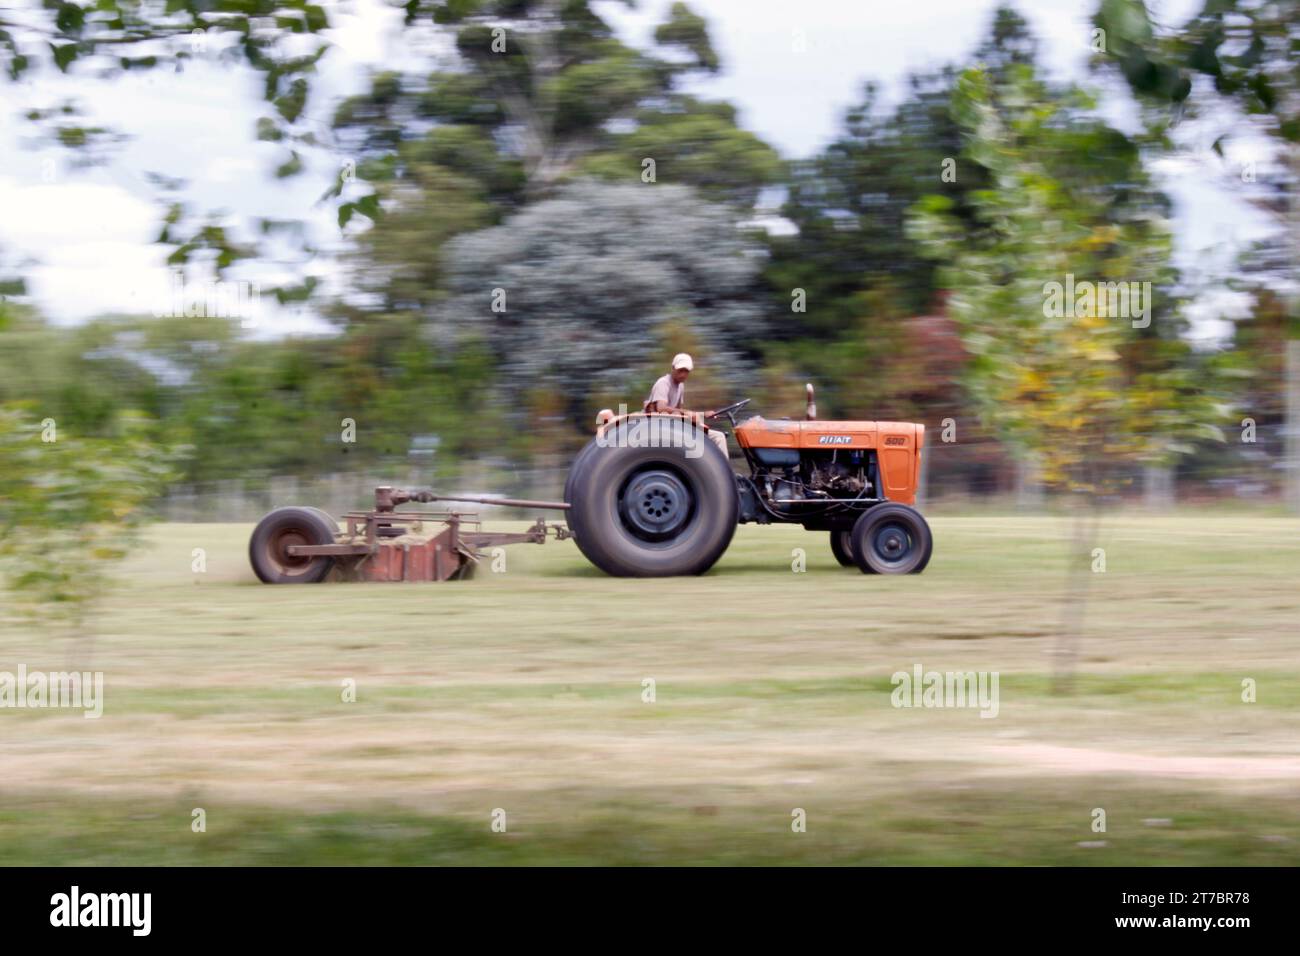 31 décembre 2012 ; Buenos Aires, Argentine. Un travailleur sur le terrain tondant l'herbe avec un vieux tracteur Fiat. Banque D'Images